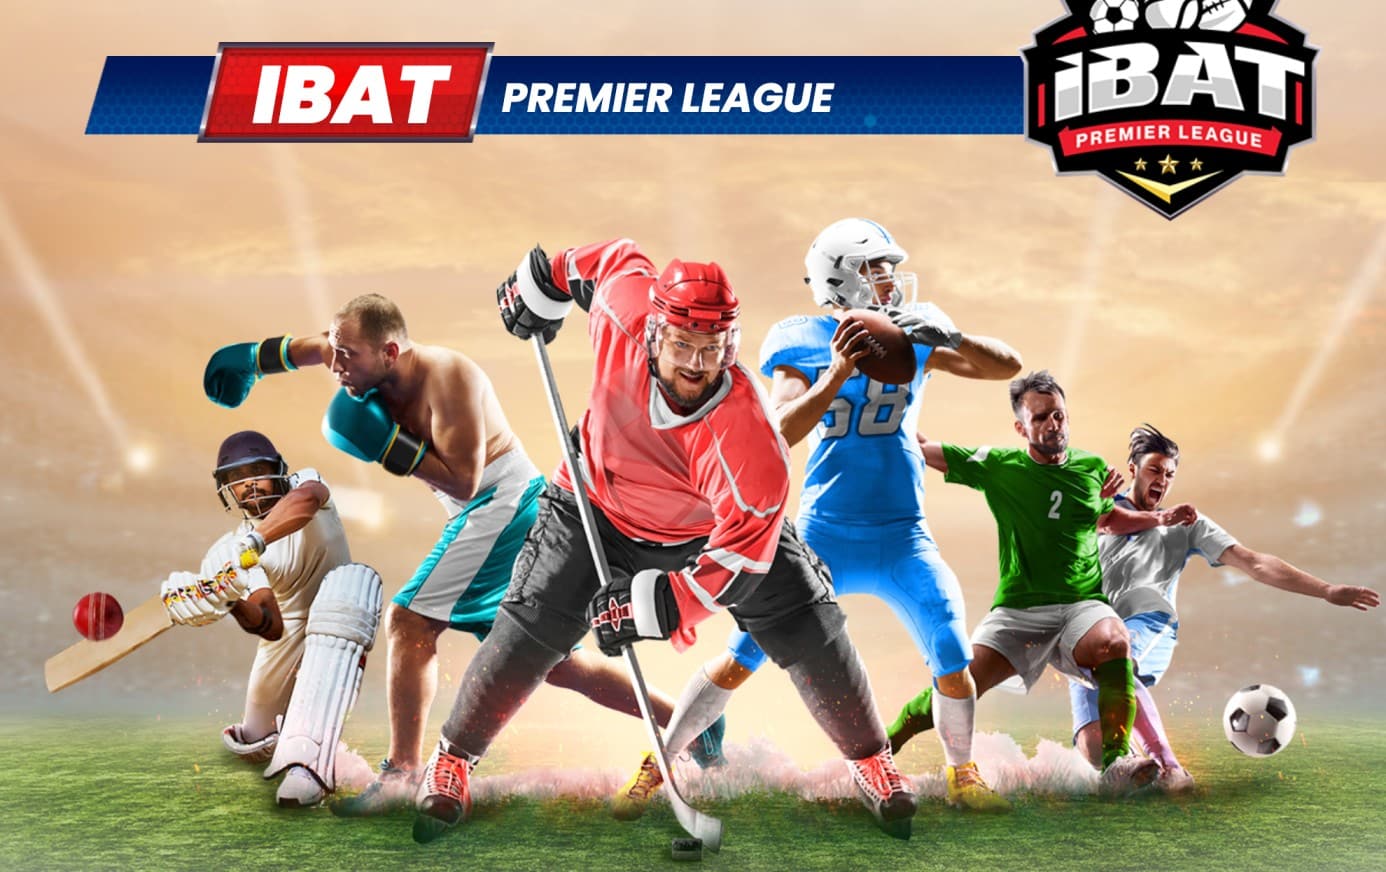 IBAT Premier League 